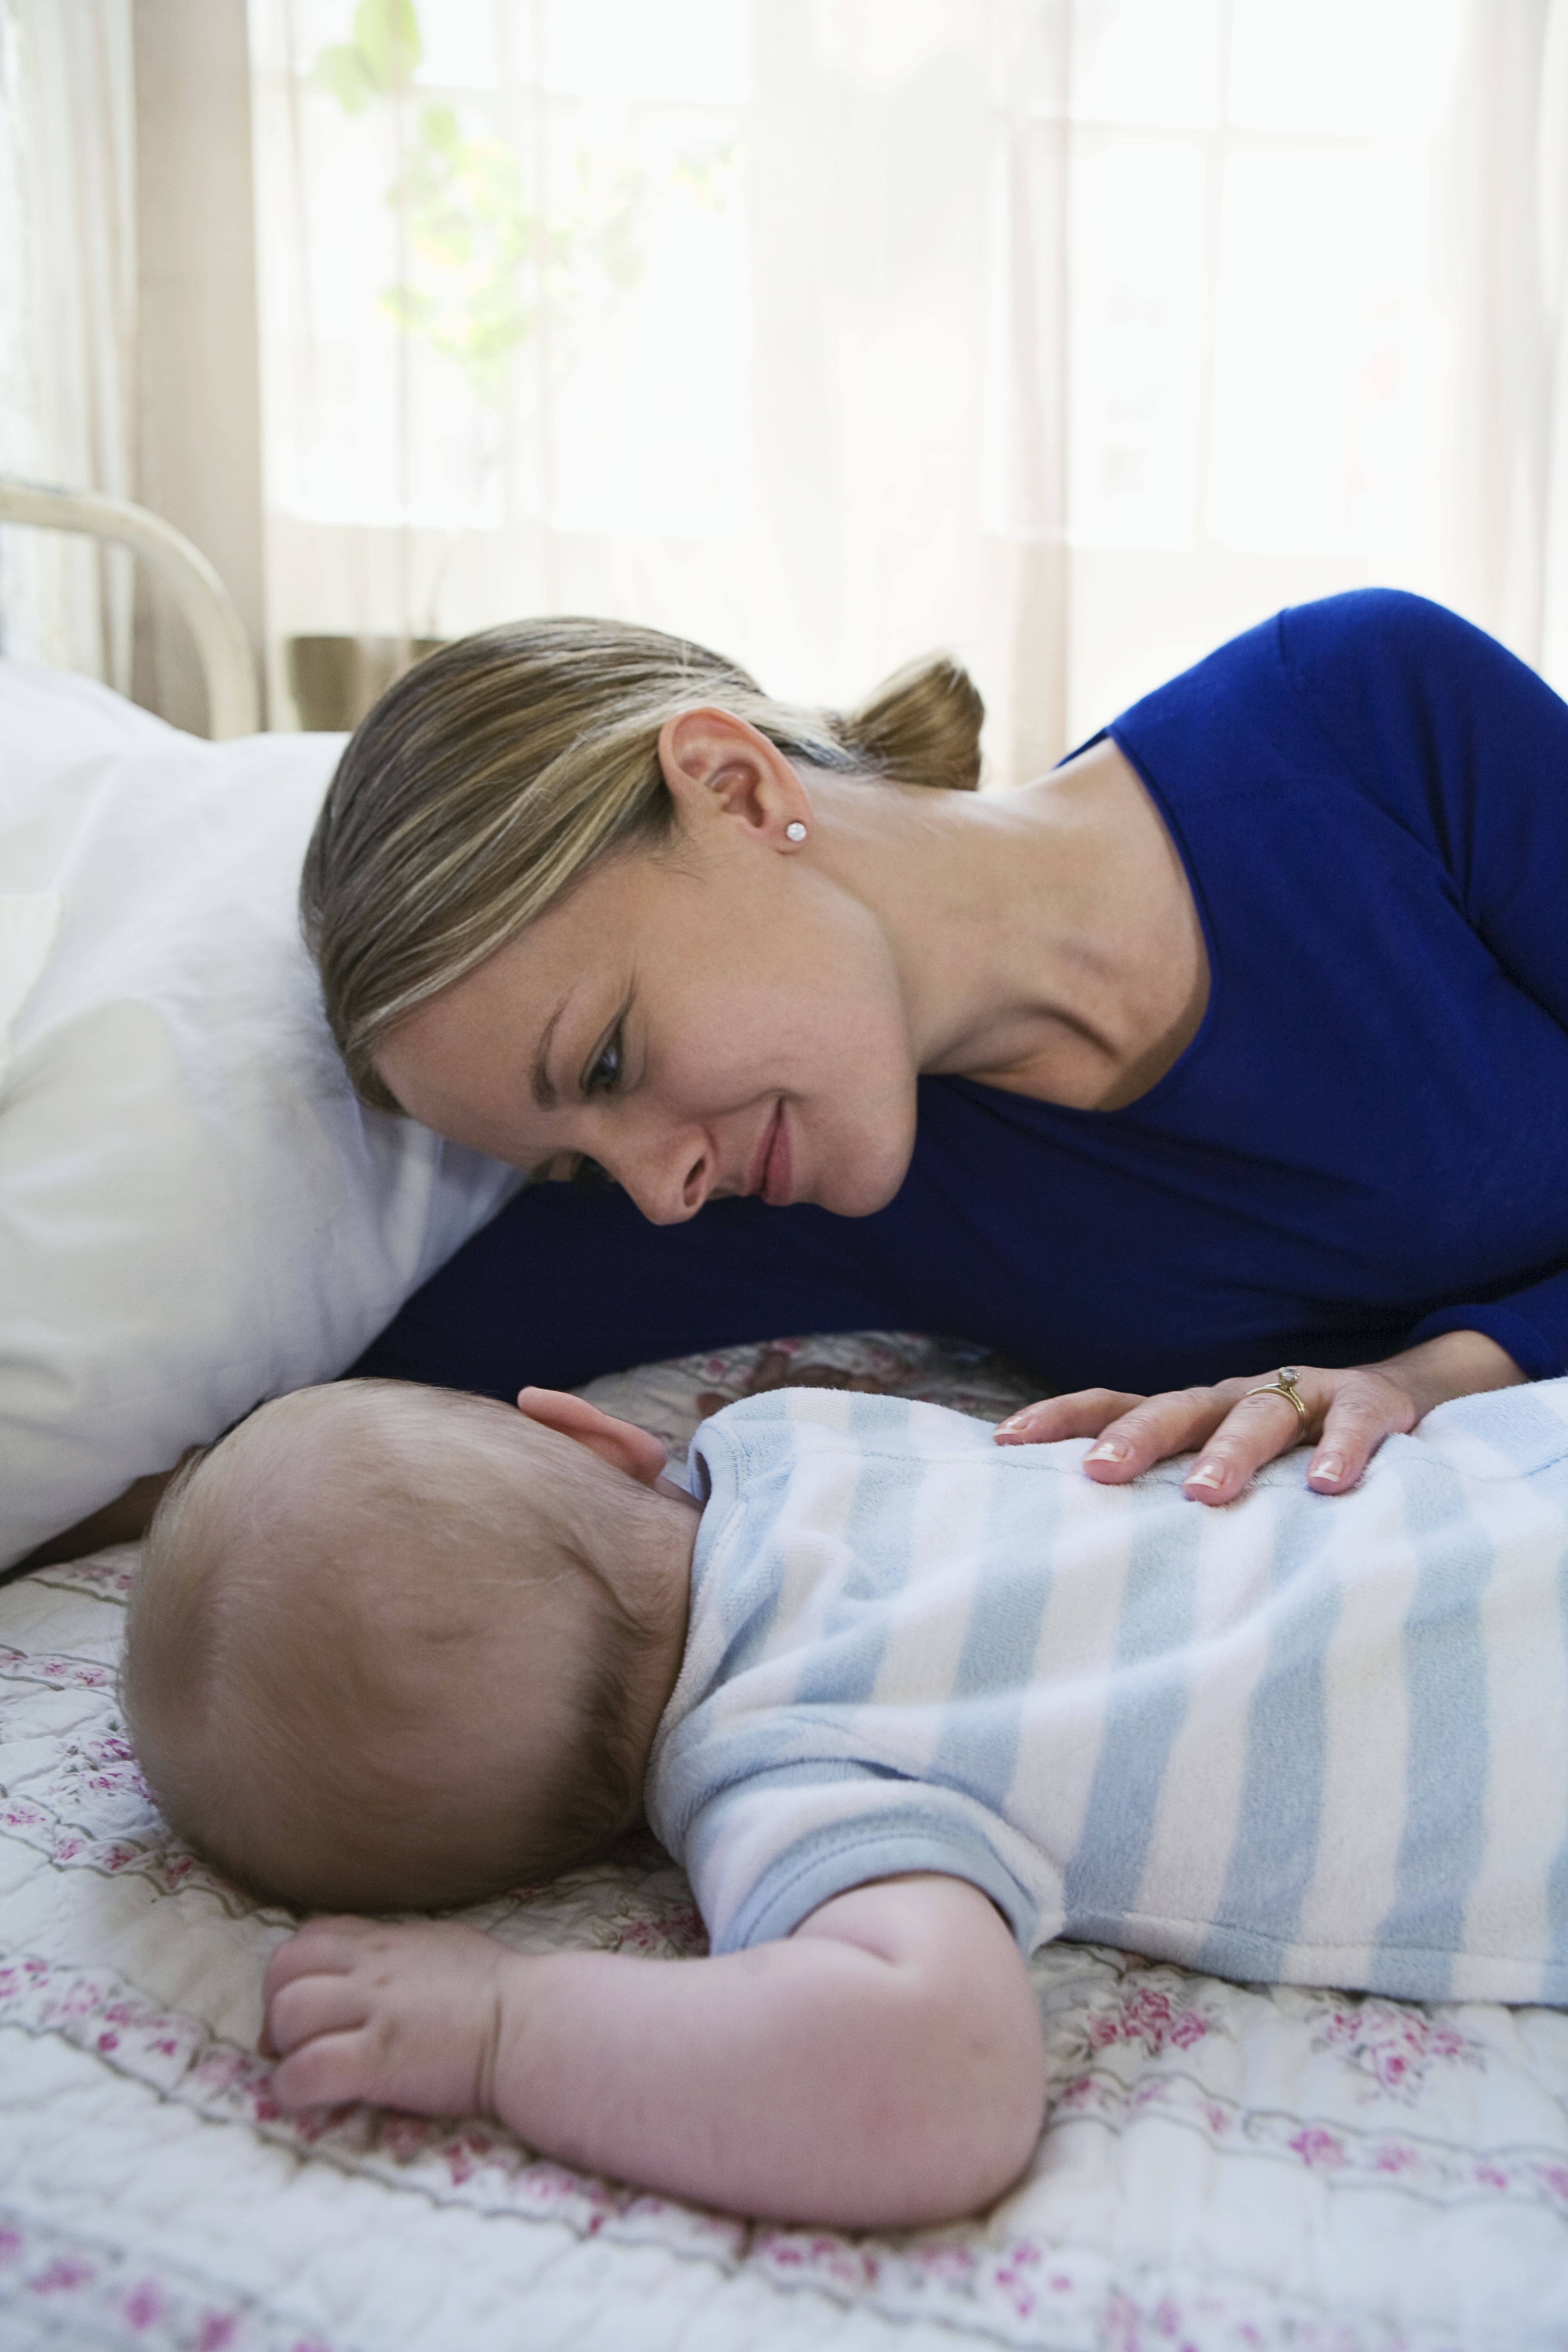 Una mujer observa a su bebé mientras duerme | Fuente: Getty Images